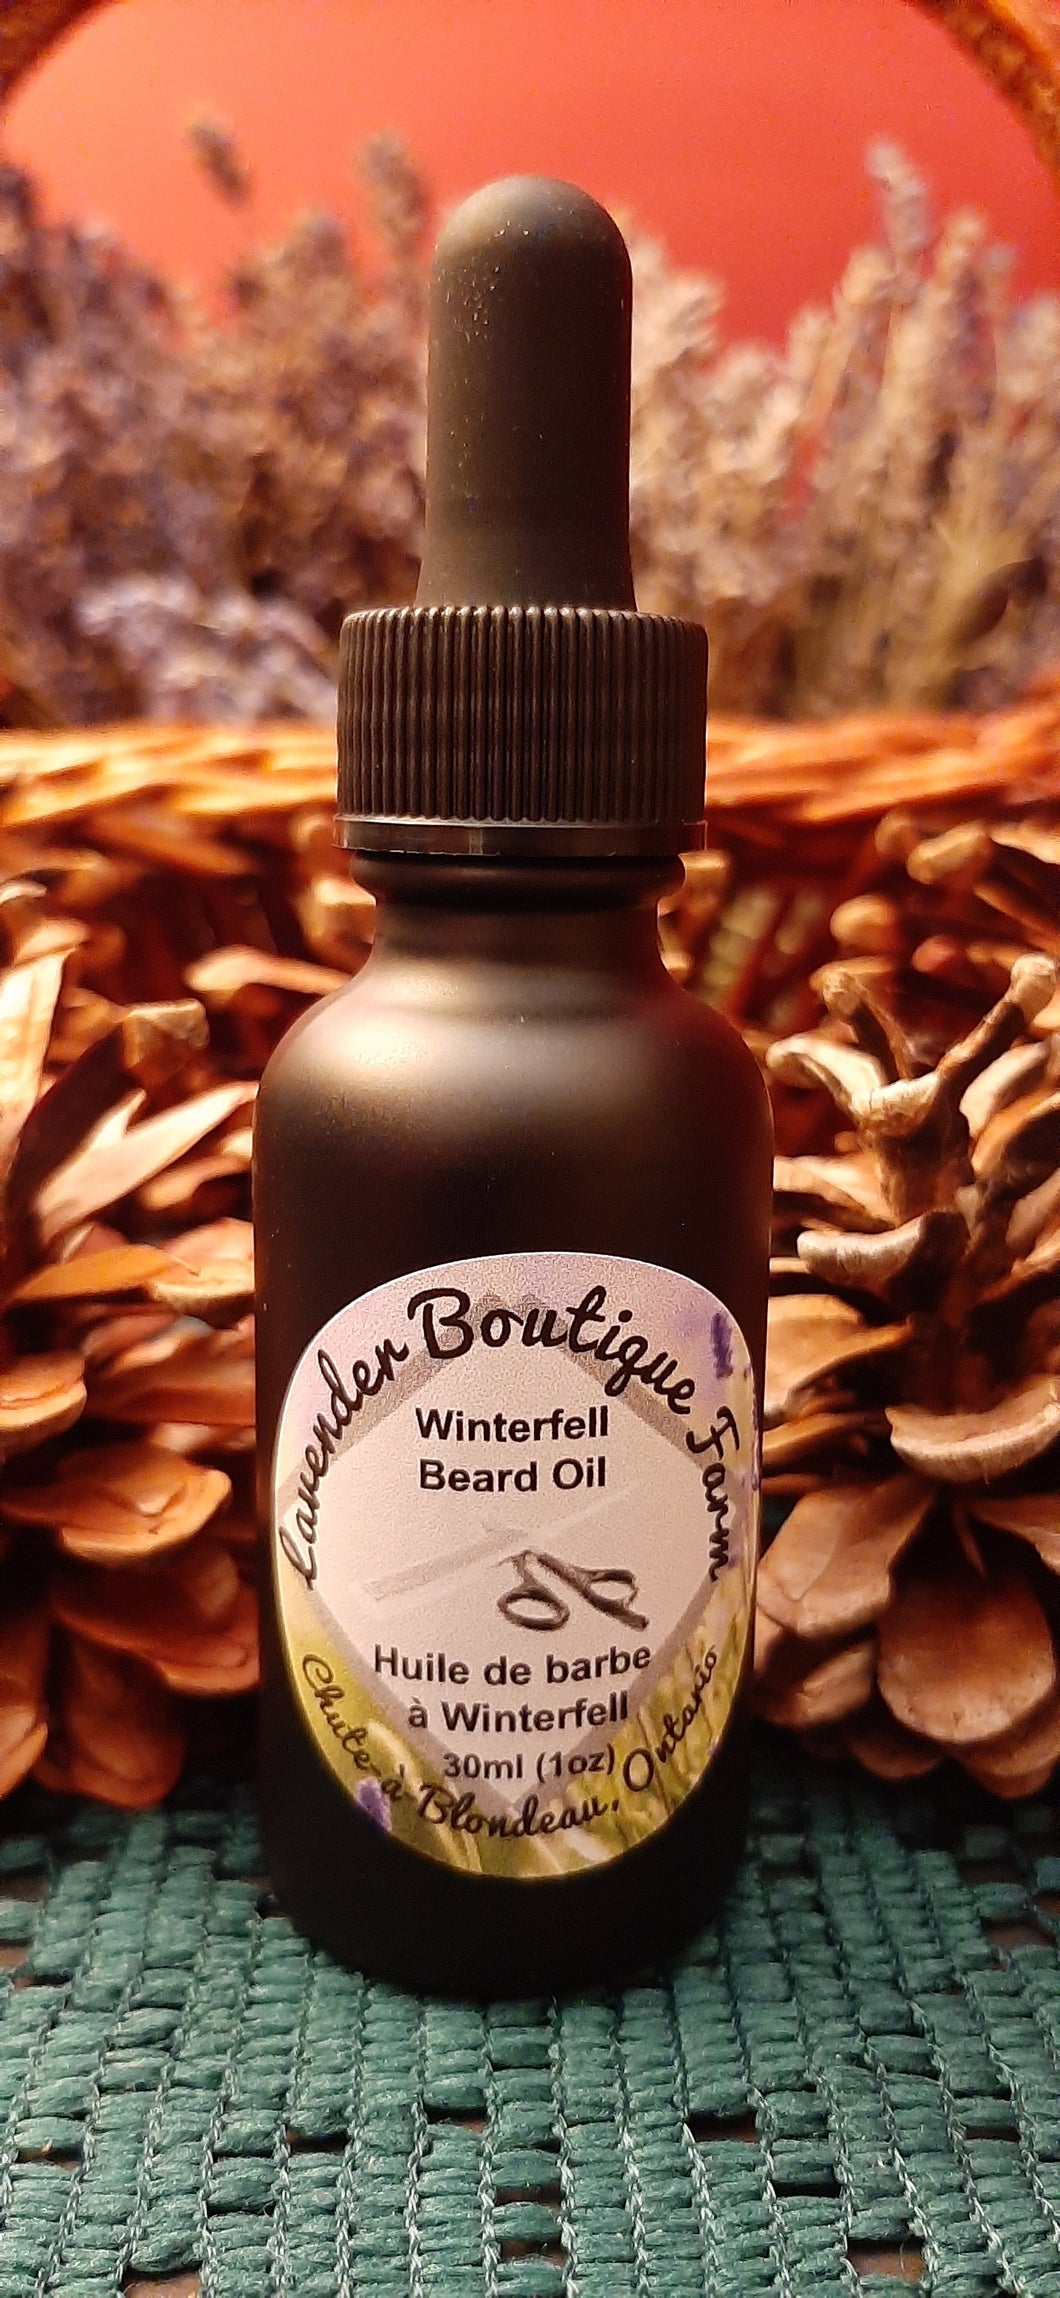 Winterfell beard oil